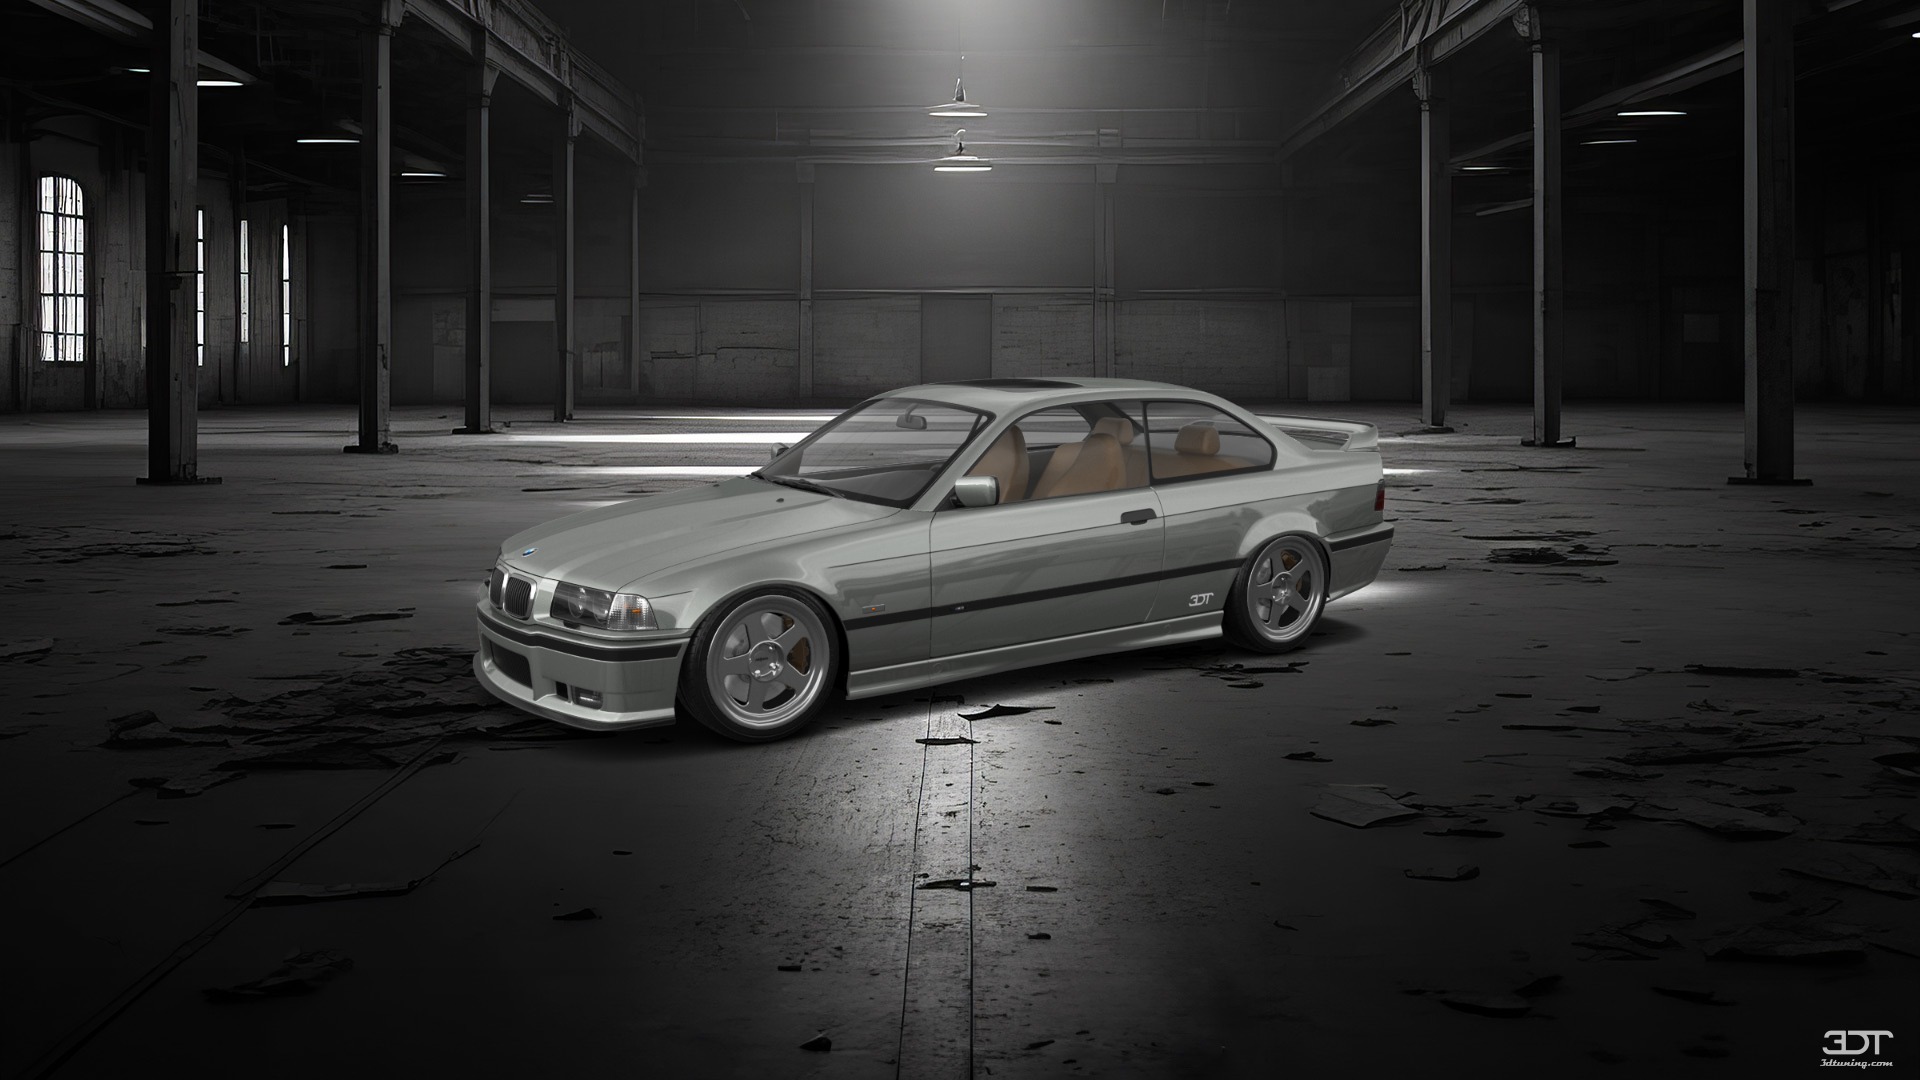 BMW 3 Series 2 Door Coupe 1993